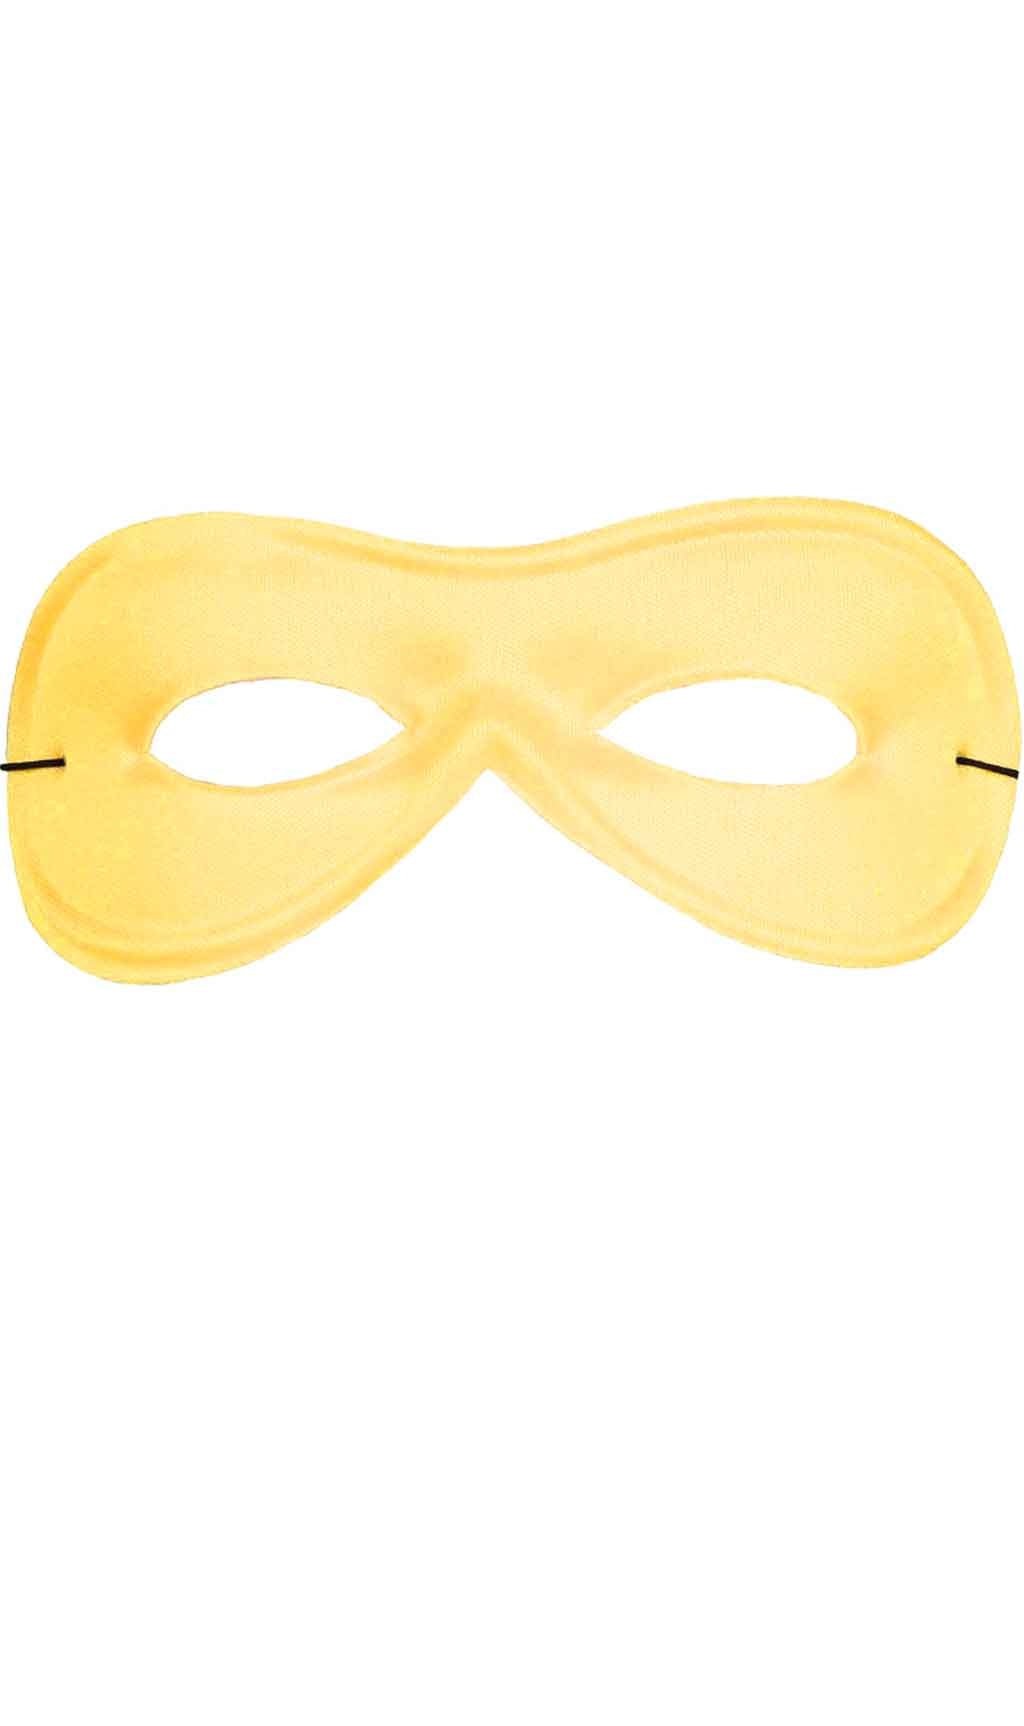 Máscara Amarela Eco